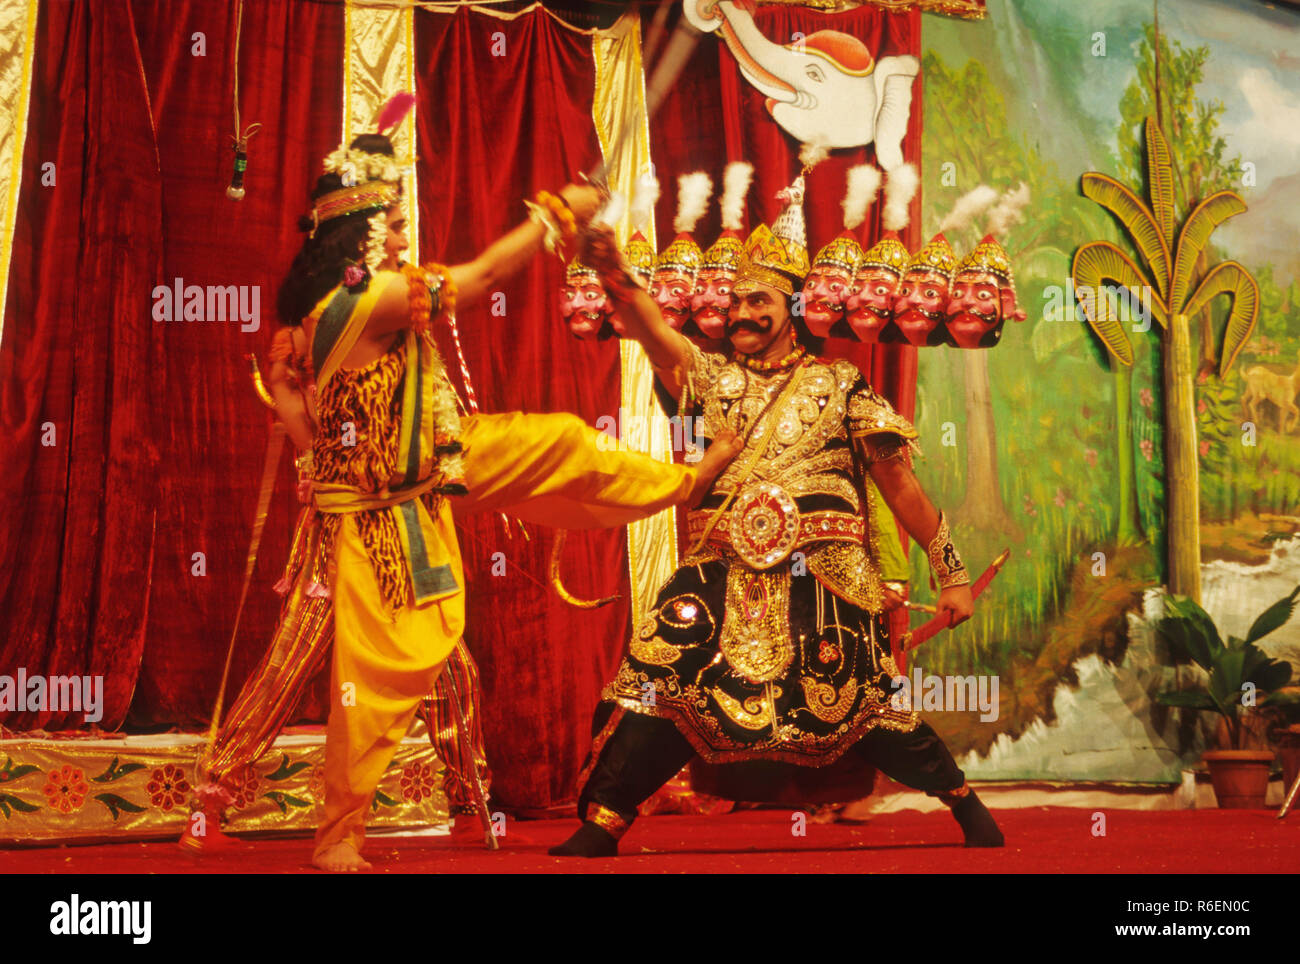 Mythologie ramleela ramayan jouer sur scène montrant le Seigneur Rama et ravana démon dix chefs la lutte contre l'Inde Banque D'Images